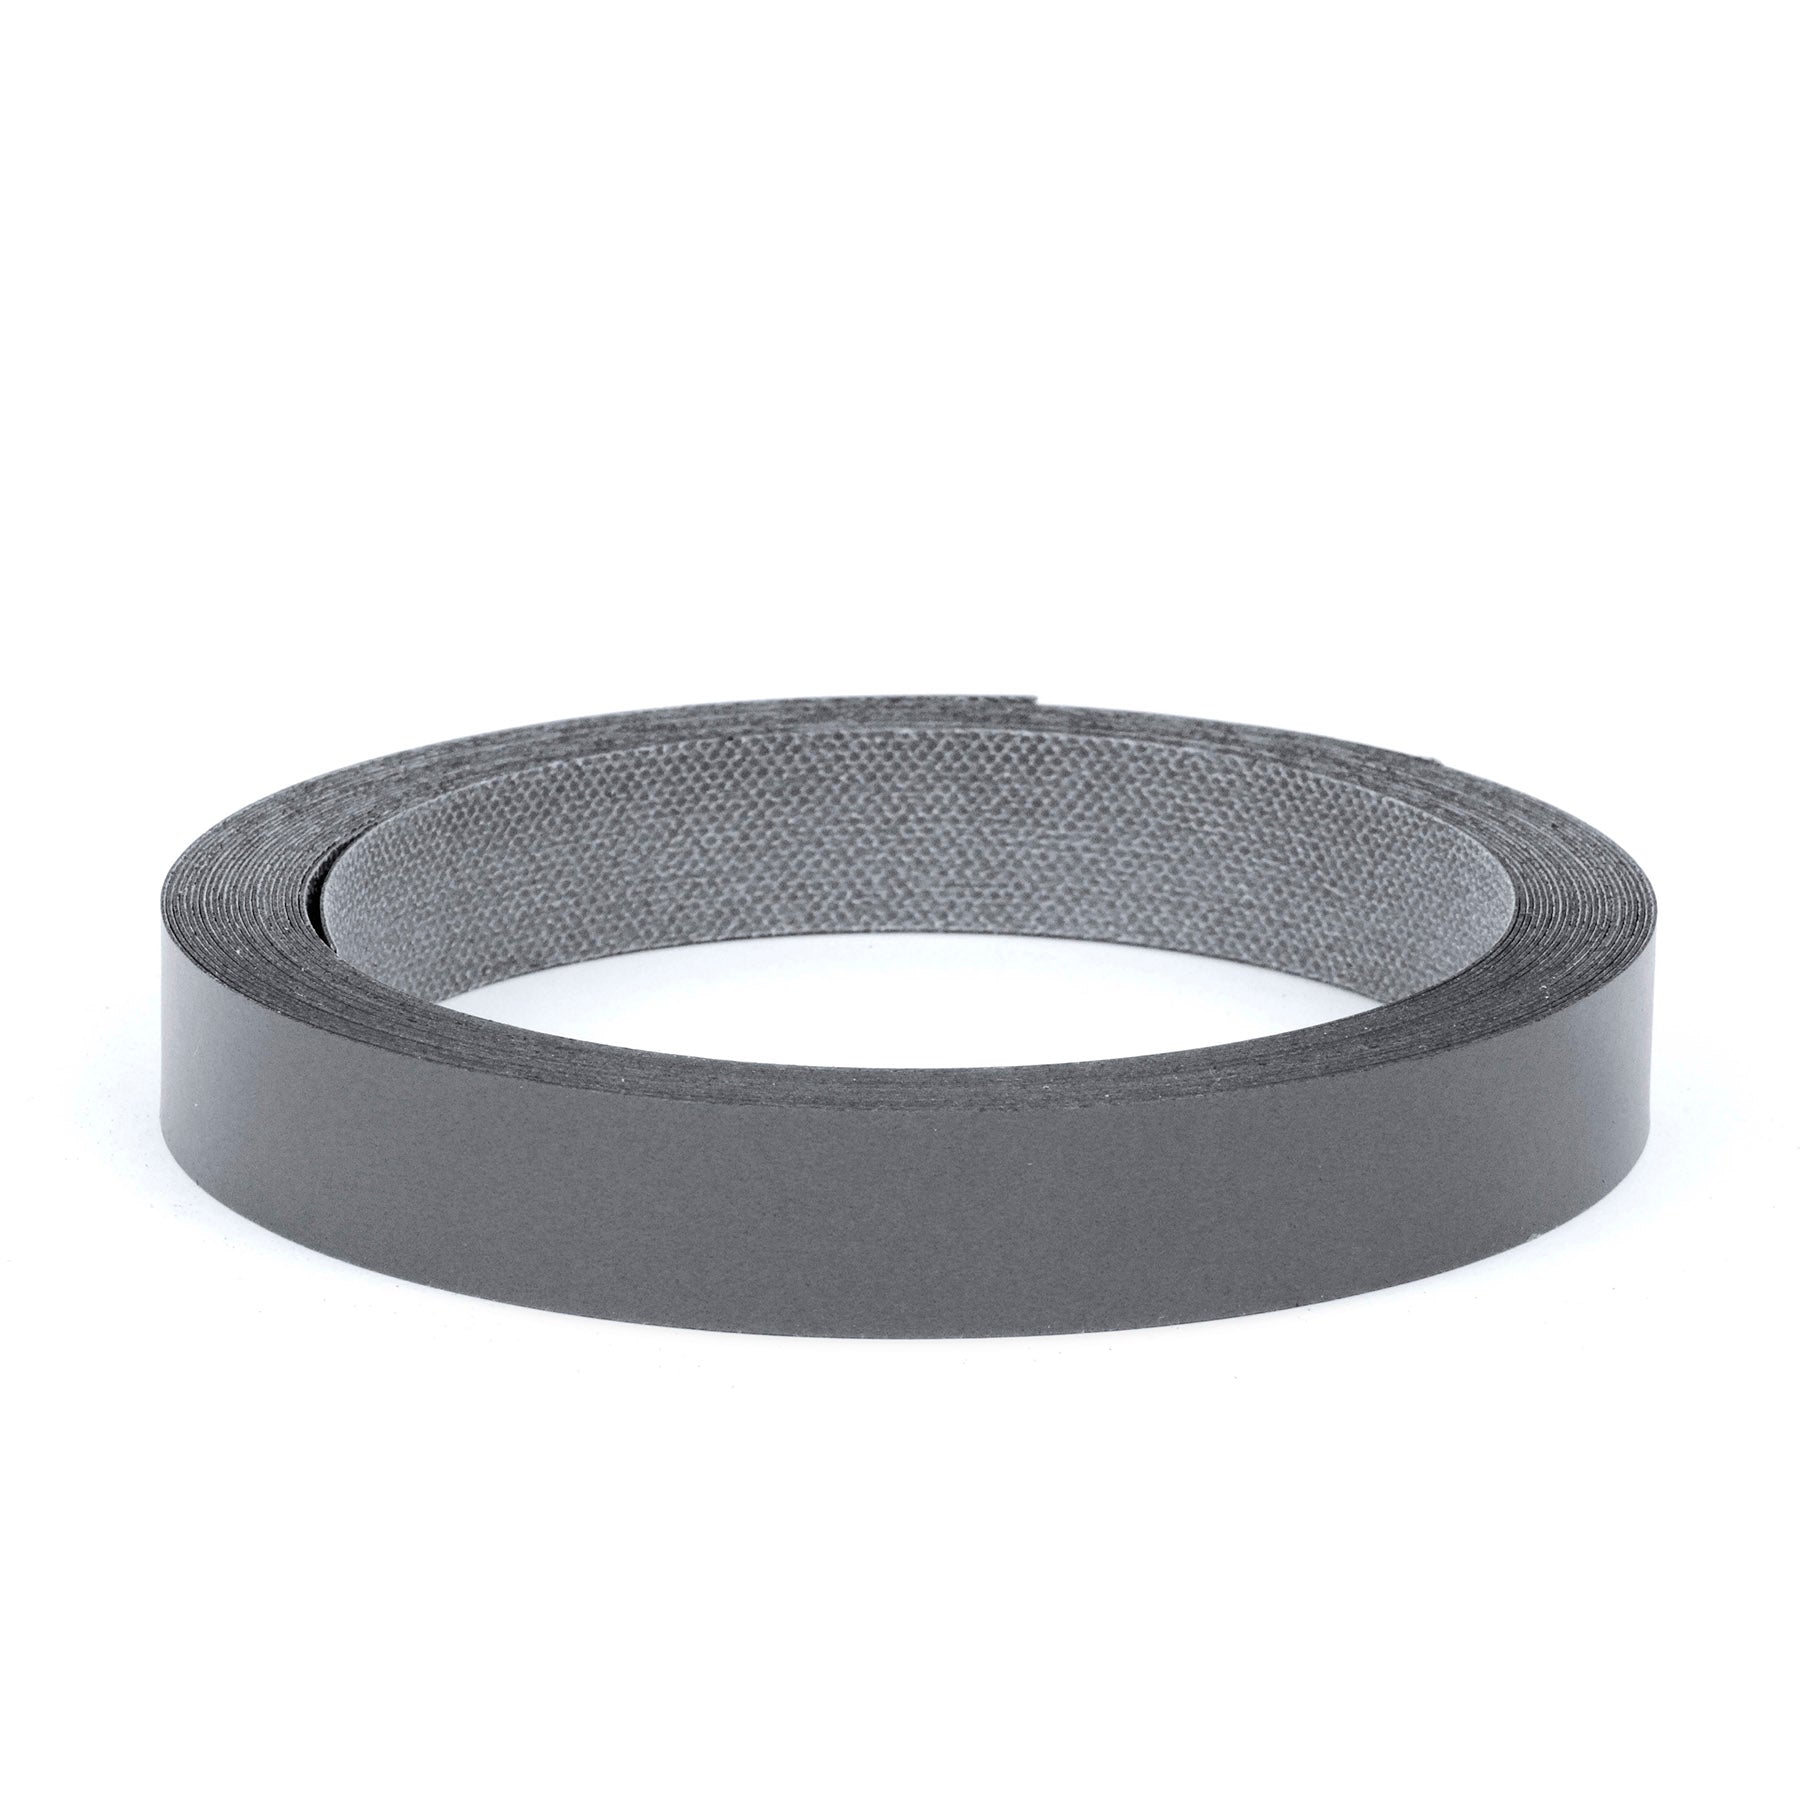 Roll of Pre-Glued Melamine Edgebanding Tape - Iron on Edgebanding (Anthracite Grey)